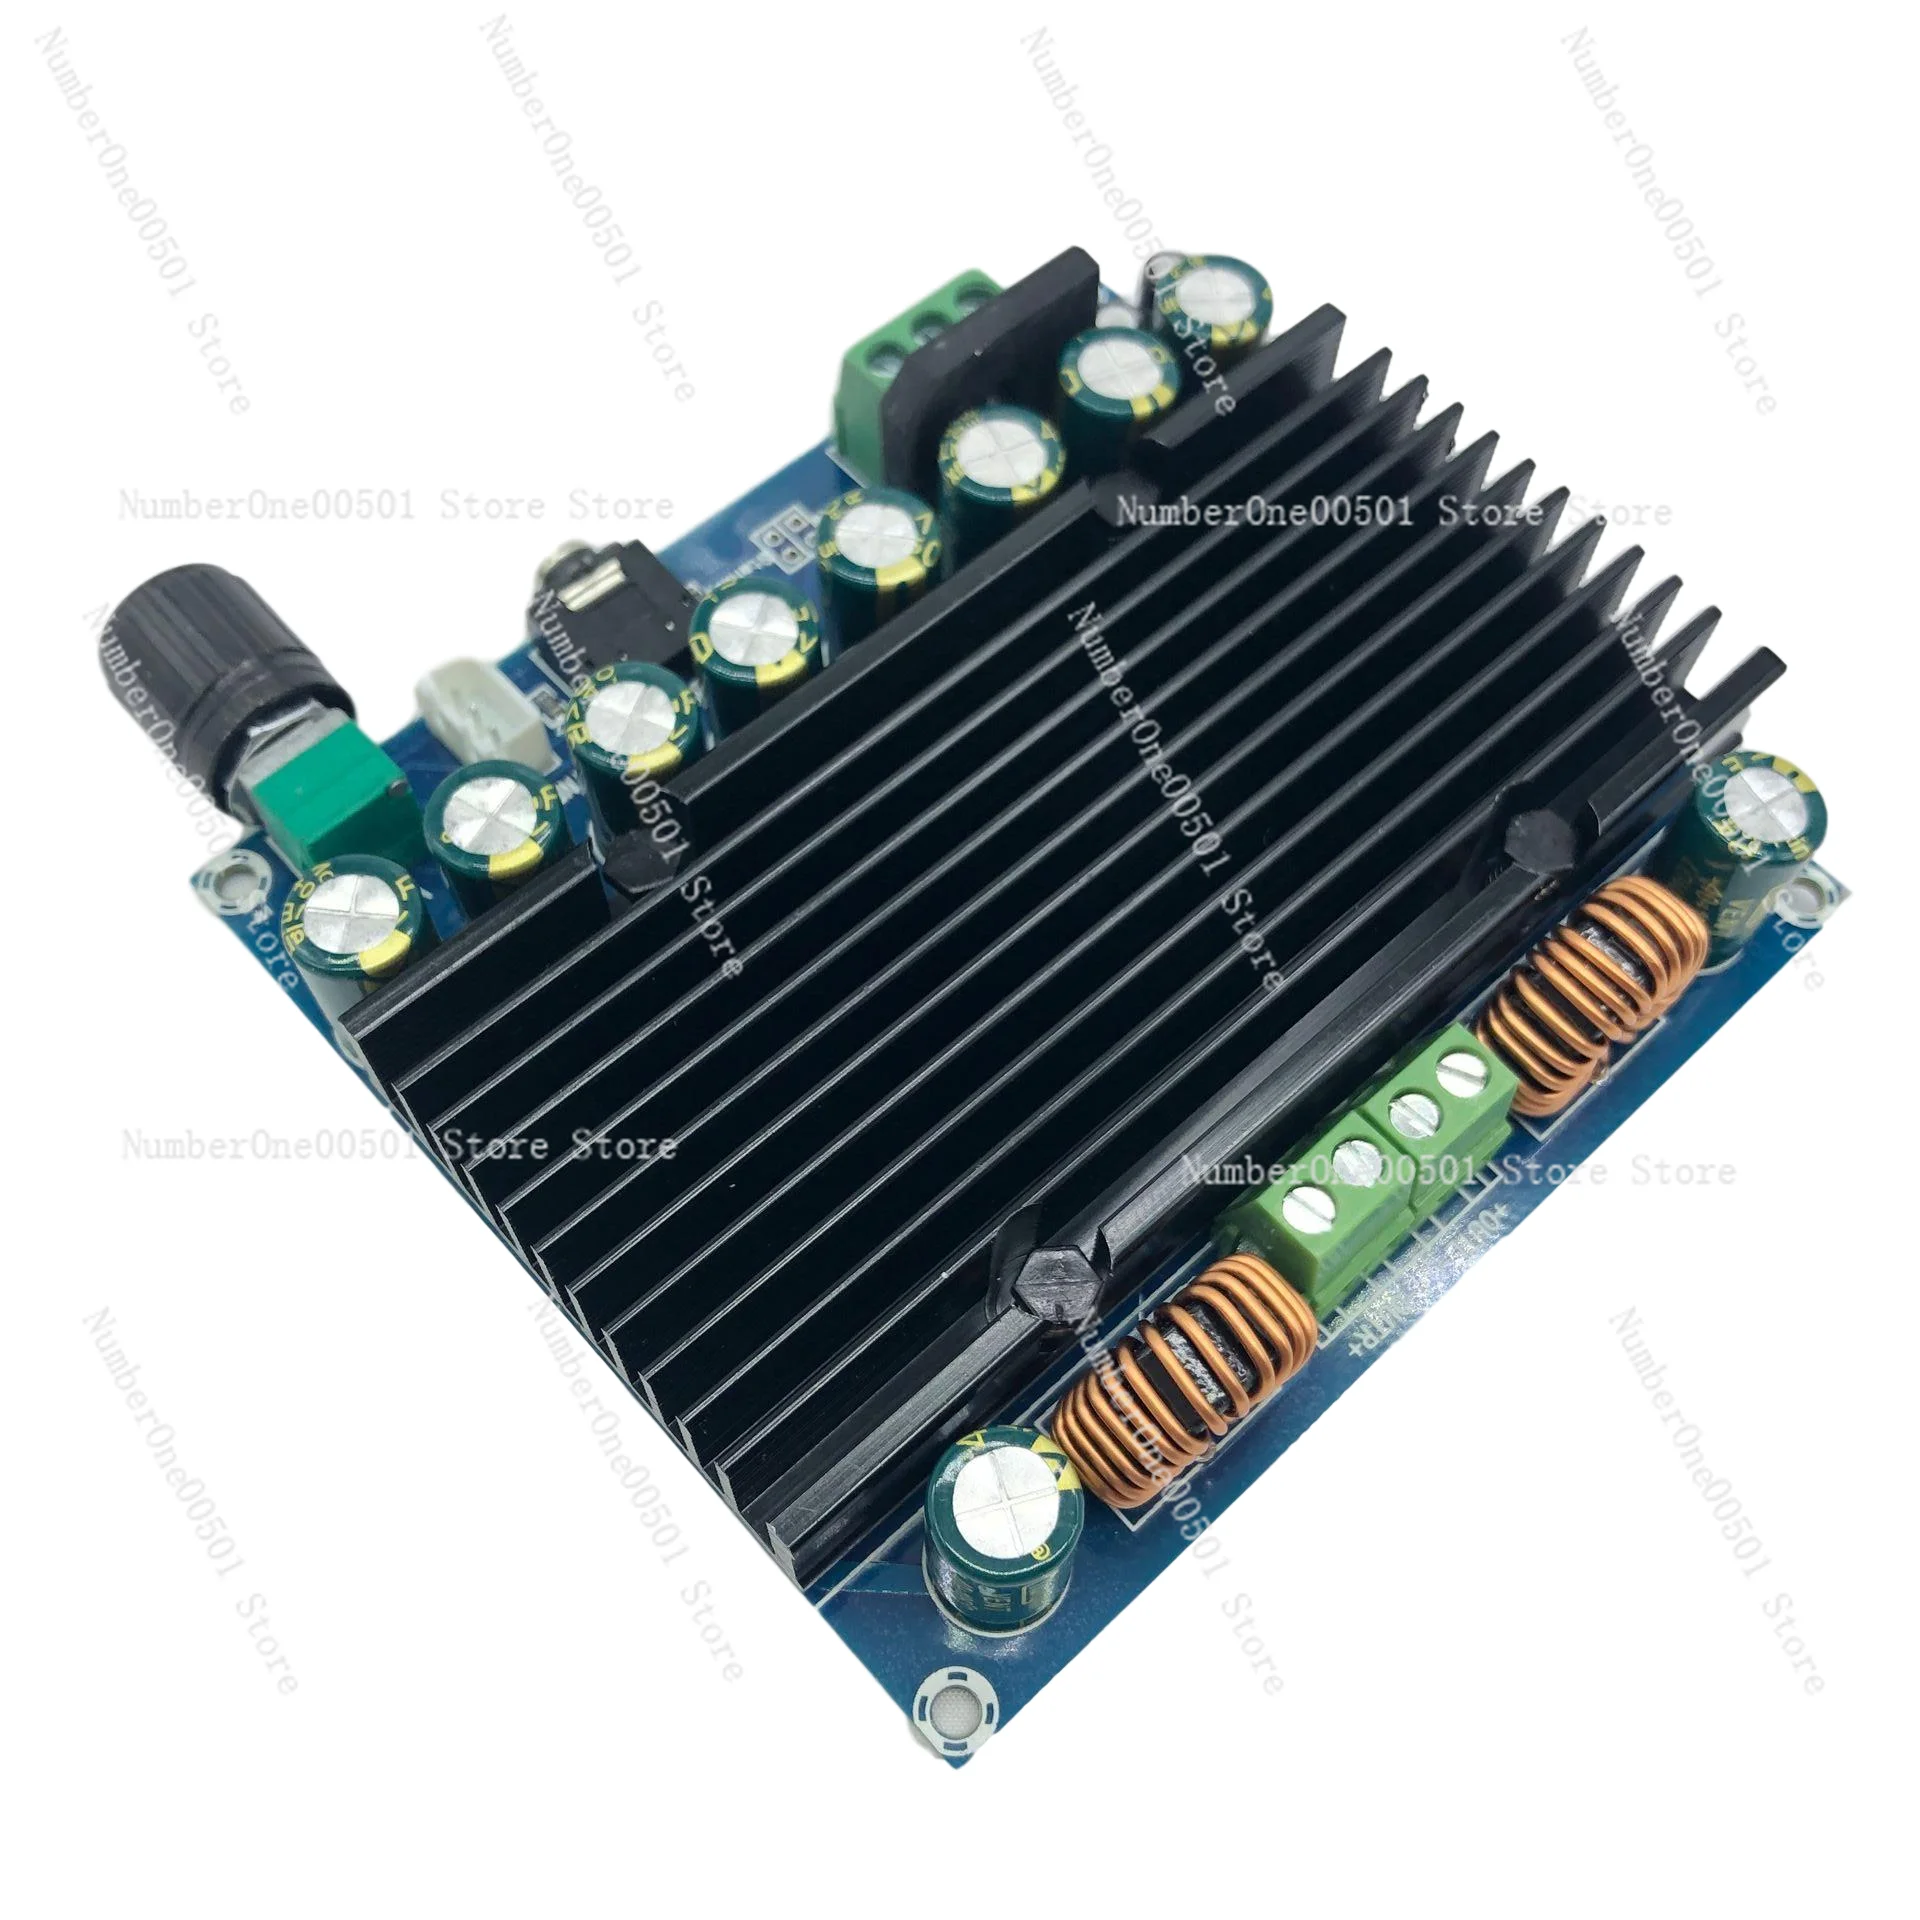 

High Power XH-M251 Class D Digital Audio Amplifier Board Tda8954 Dual 12-28V Power Supply Dual 210W